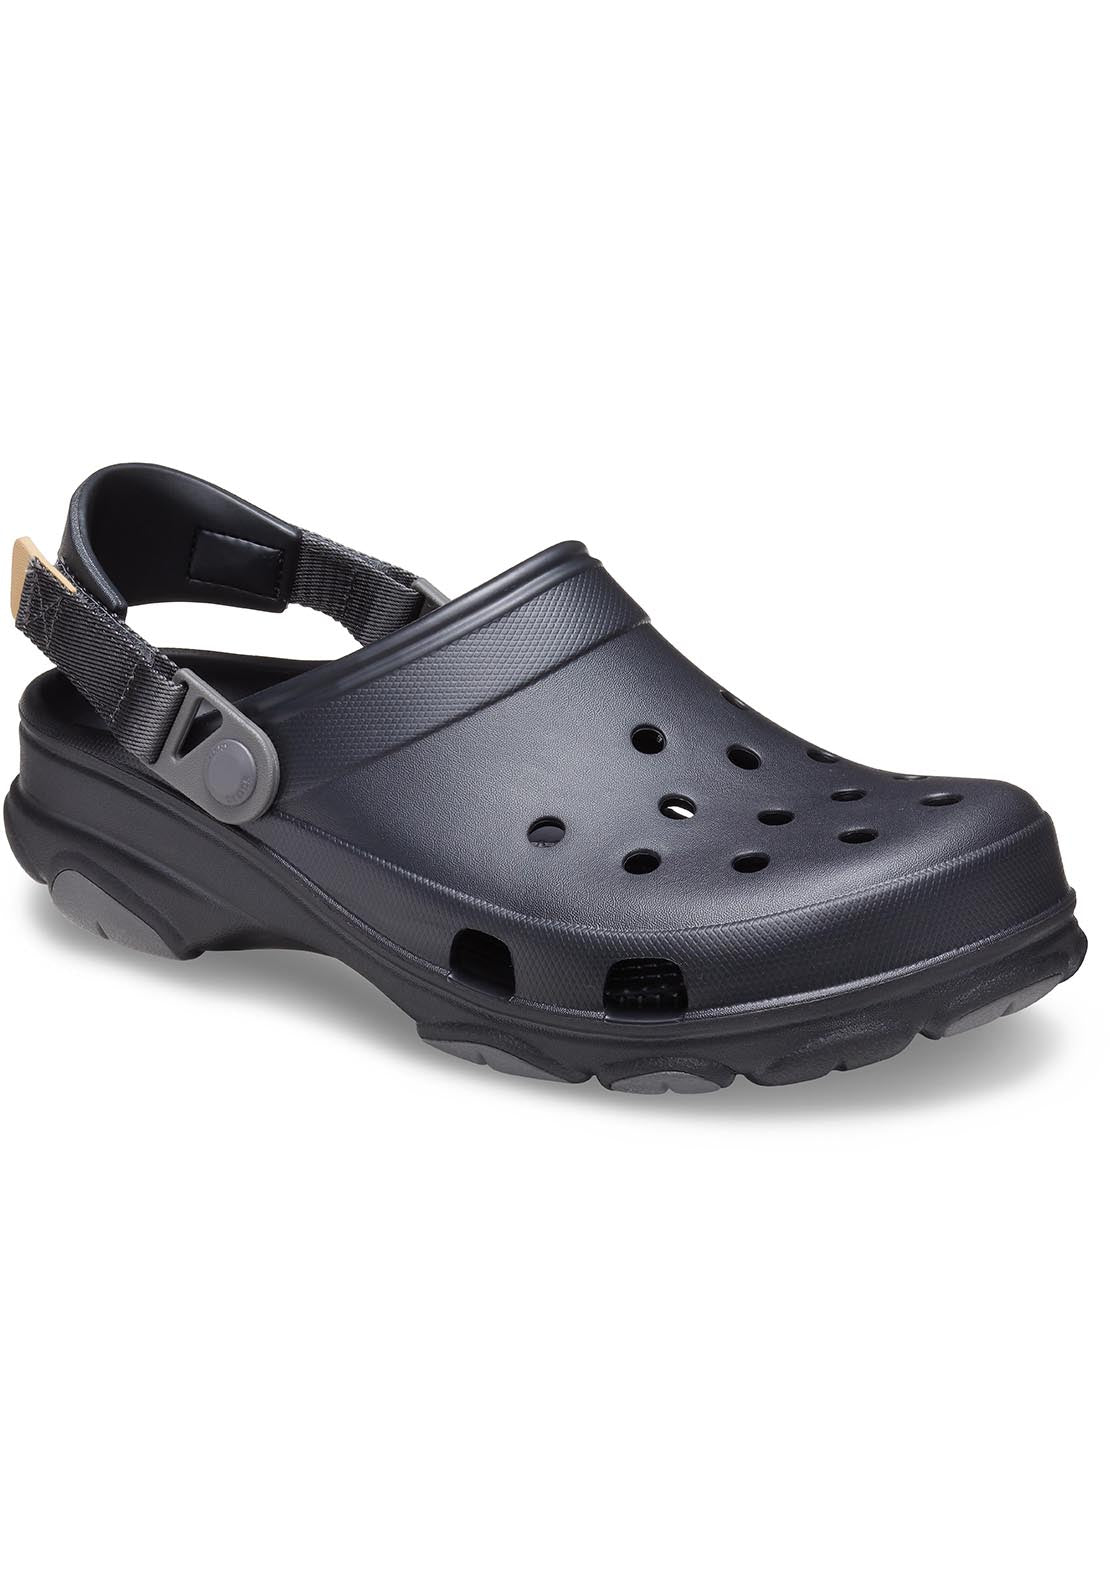 Crocs All Terrain Clog - Black 8 Shaws Department Stores